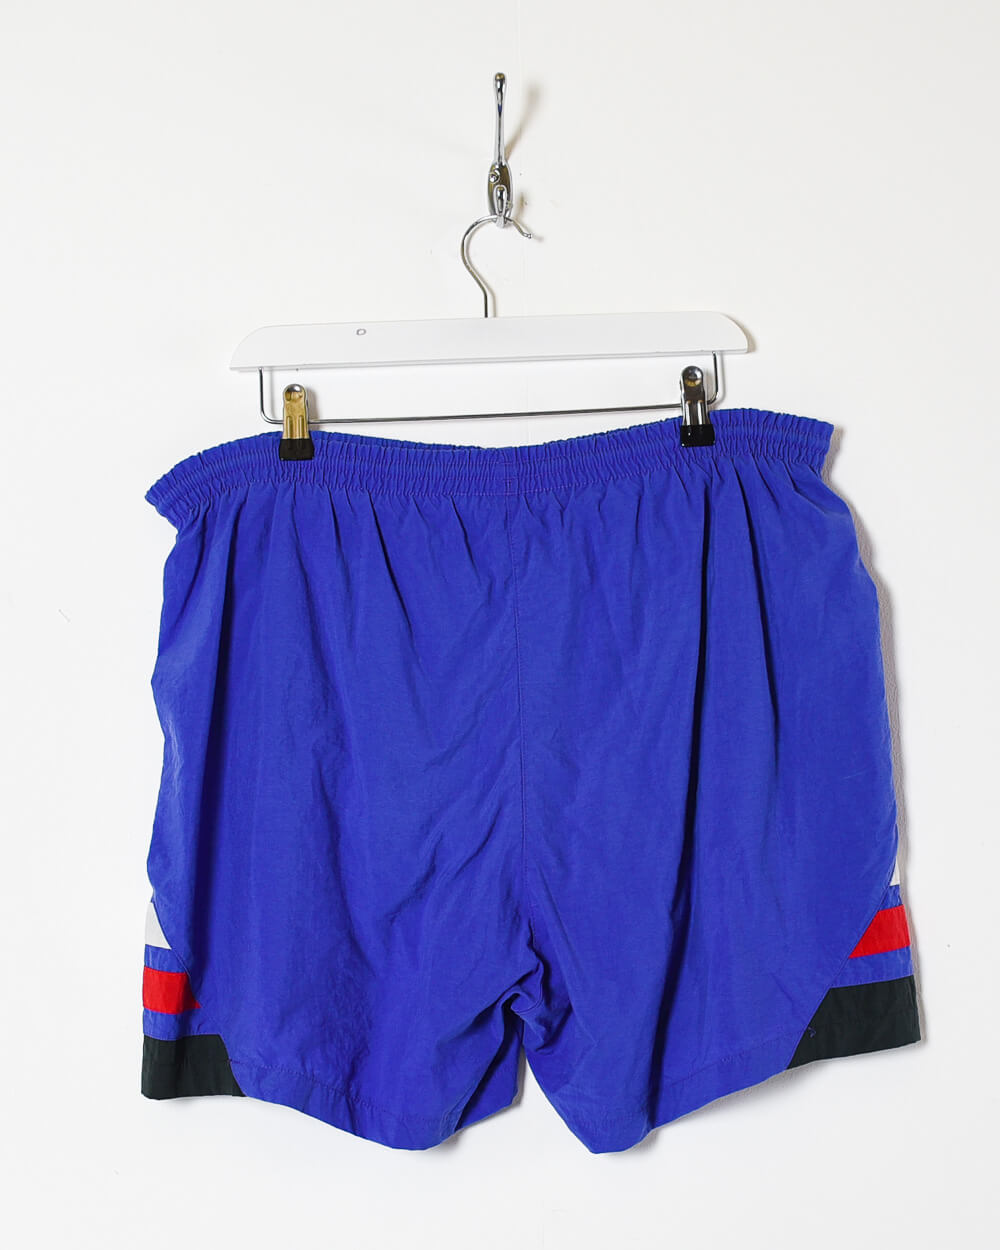 Blue Adidas Shorts - Large